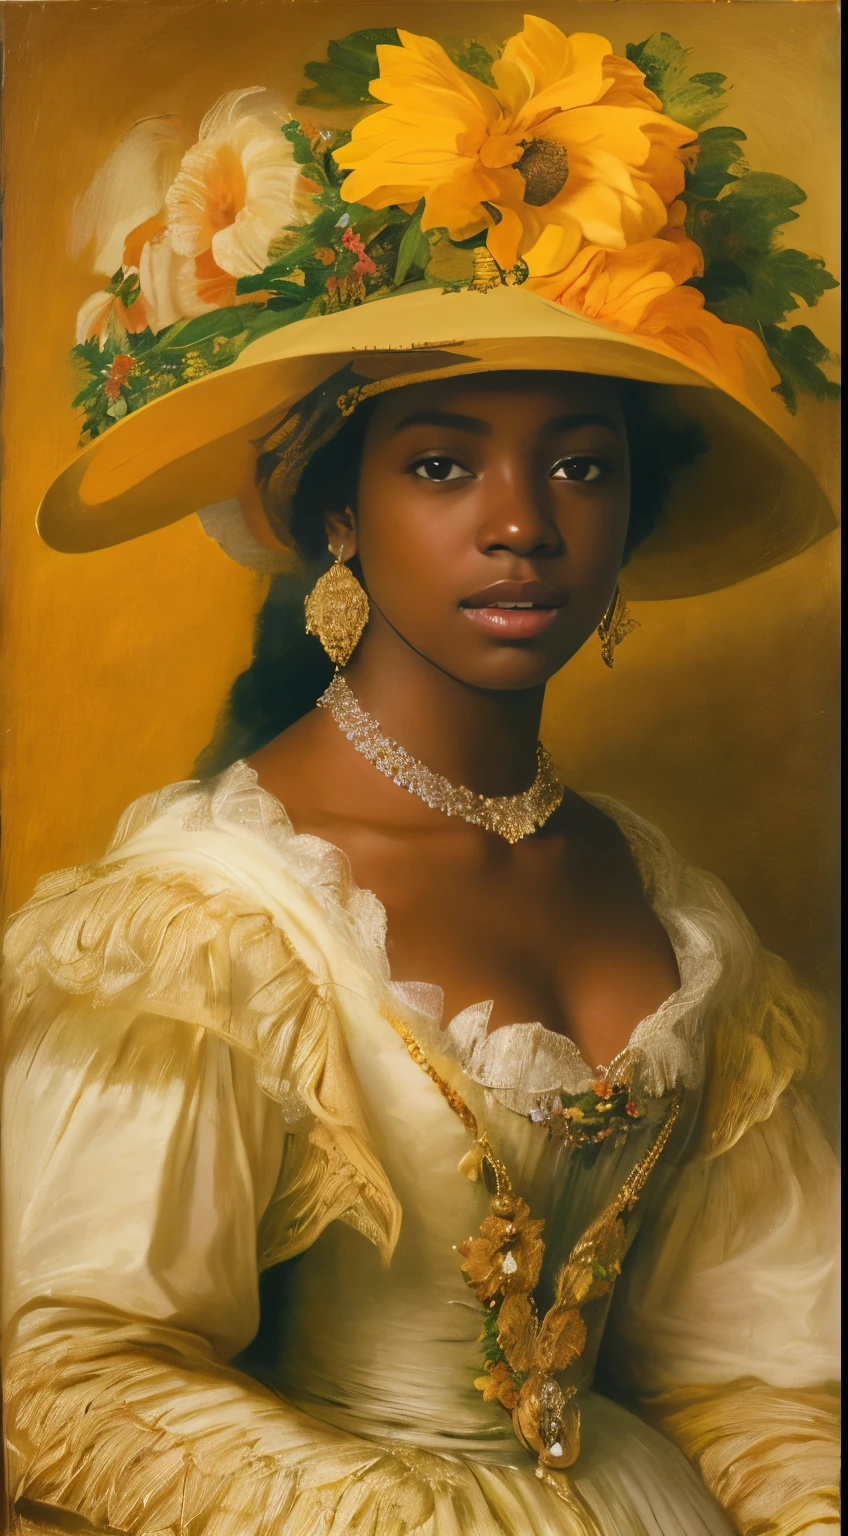 身穿黄色连衣裙、皮肤乌黑的漂亮年轻女子，戴上插花帽子, 一名年轻女子, inspired by 弗里德里希·冯·阿梅林g, inspired by 弗朗西斯科·哈耶兹, 作者：弗朗西斯科·哈耶兹, 灵感来自弗朗兹·克萨维尔·温特哈特, 年轻皇后的肖像, 女演员的肖像, 作者：伊曼纽尔·德维特, 作者：弗里德里希·冯·阿梅林, 年轻女子, 作者：德克·德·布雷